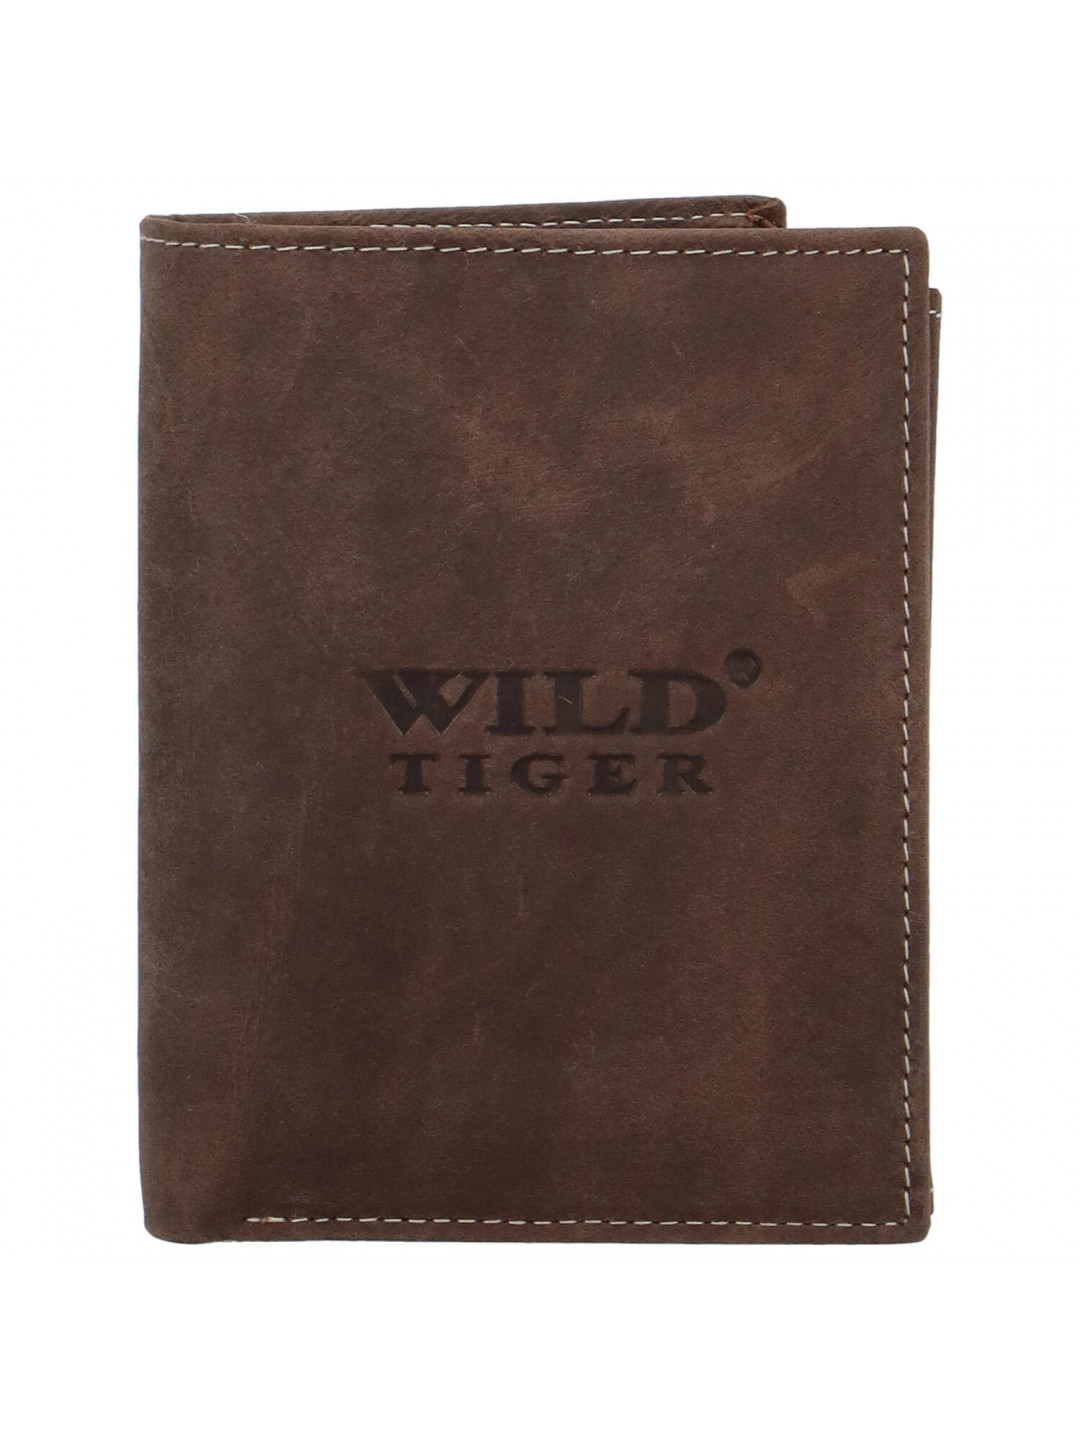 Pánská kožená peněženka tmavě hnědá – Wild Tiger Stefan